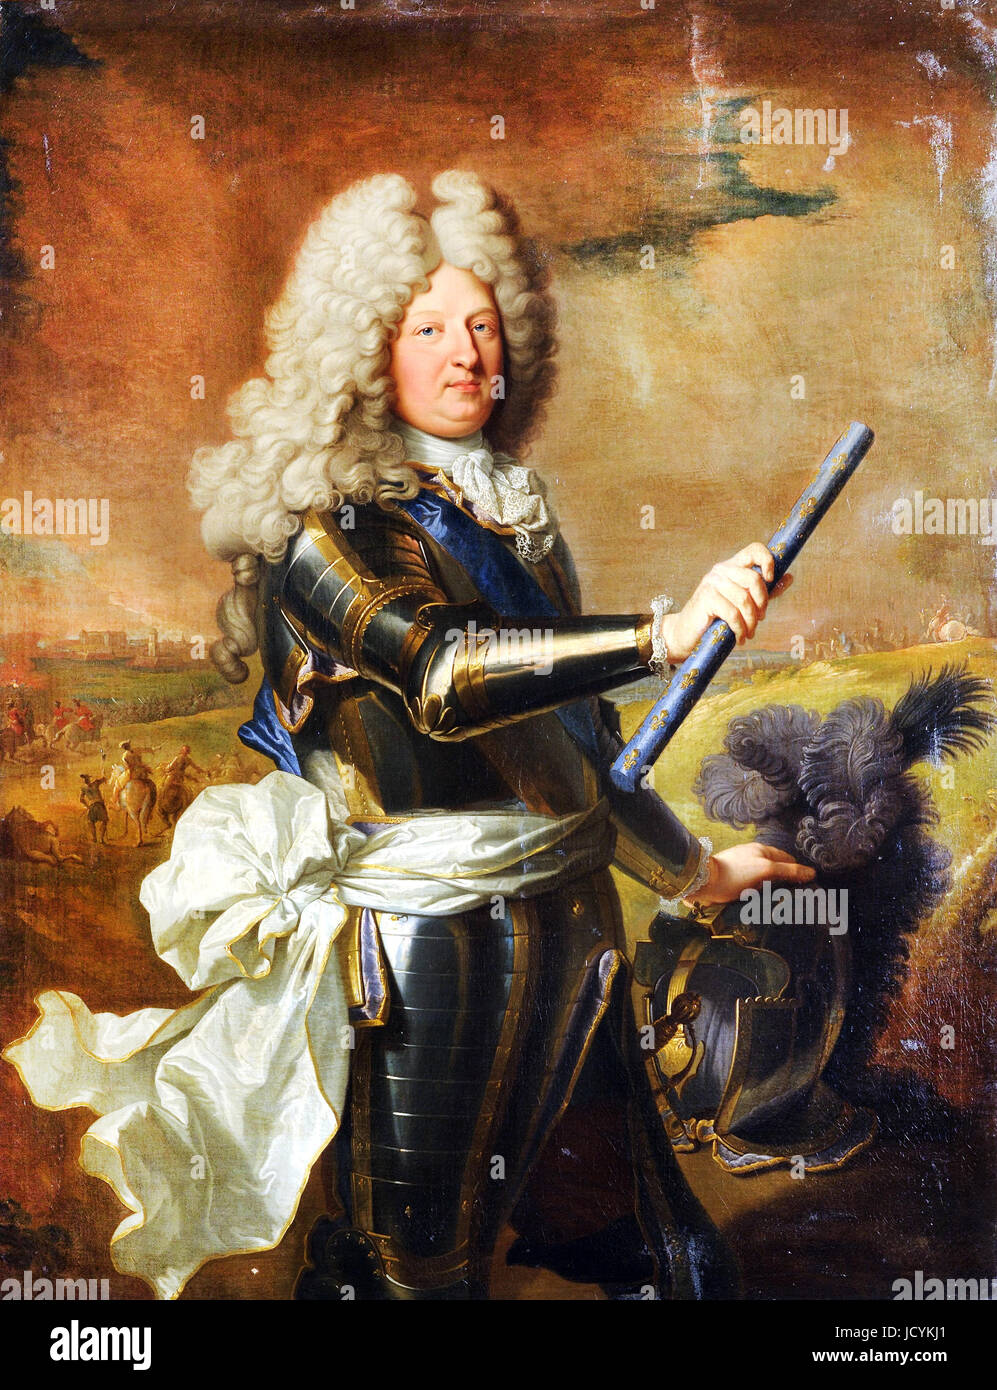 Hyacinthe Rigaud, Louis de France, Dauphin (1661-1711), bekannt als der Grand Dauphin. 1688-Öl auf Leinwand. Schloss von Versailles, Frankreich. Stockfoto